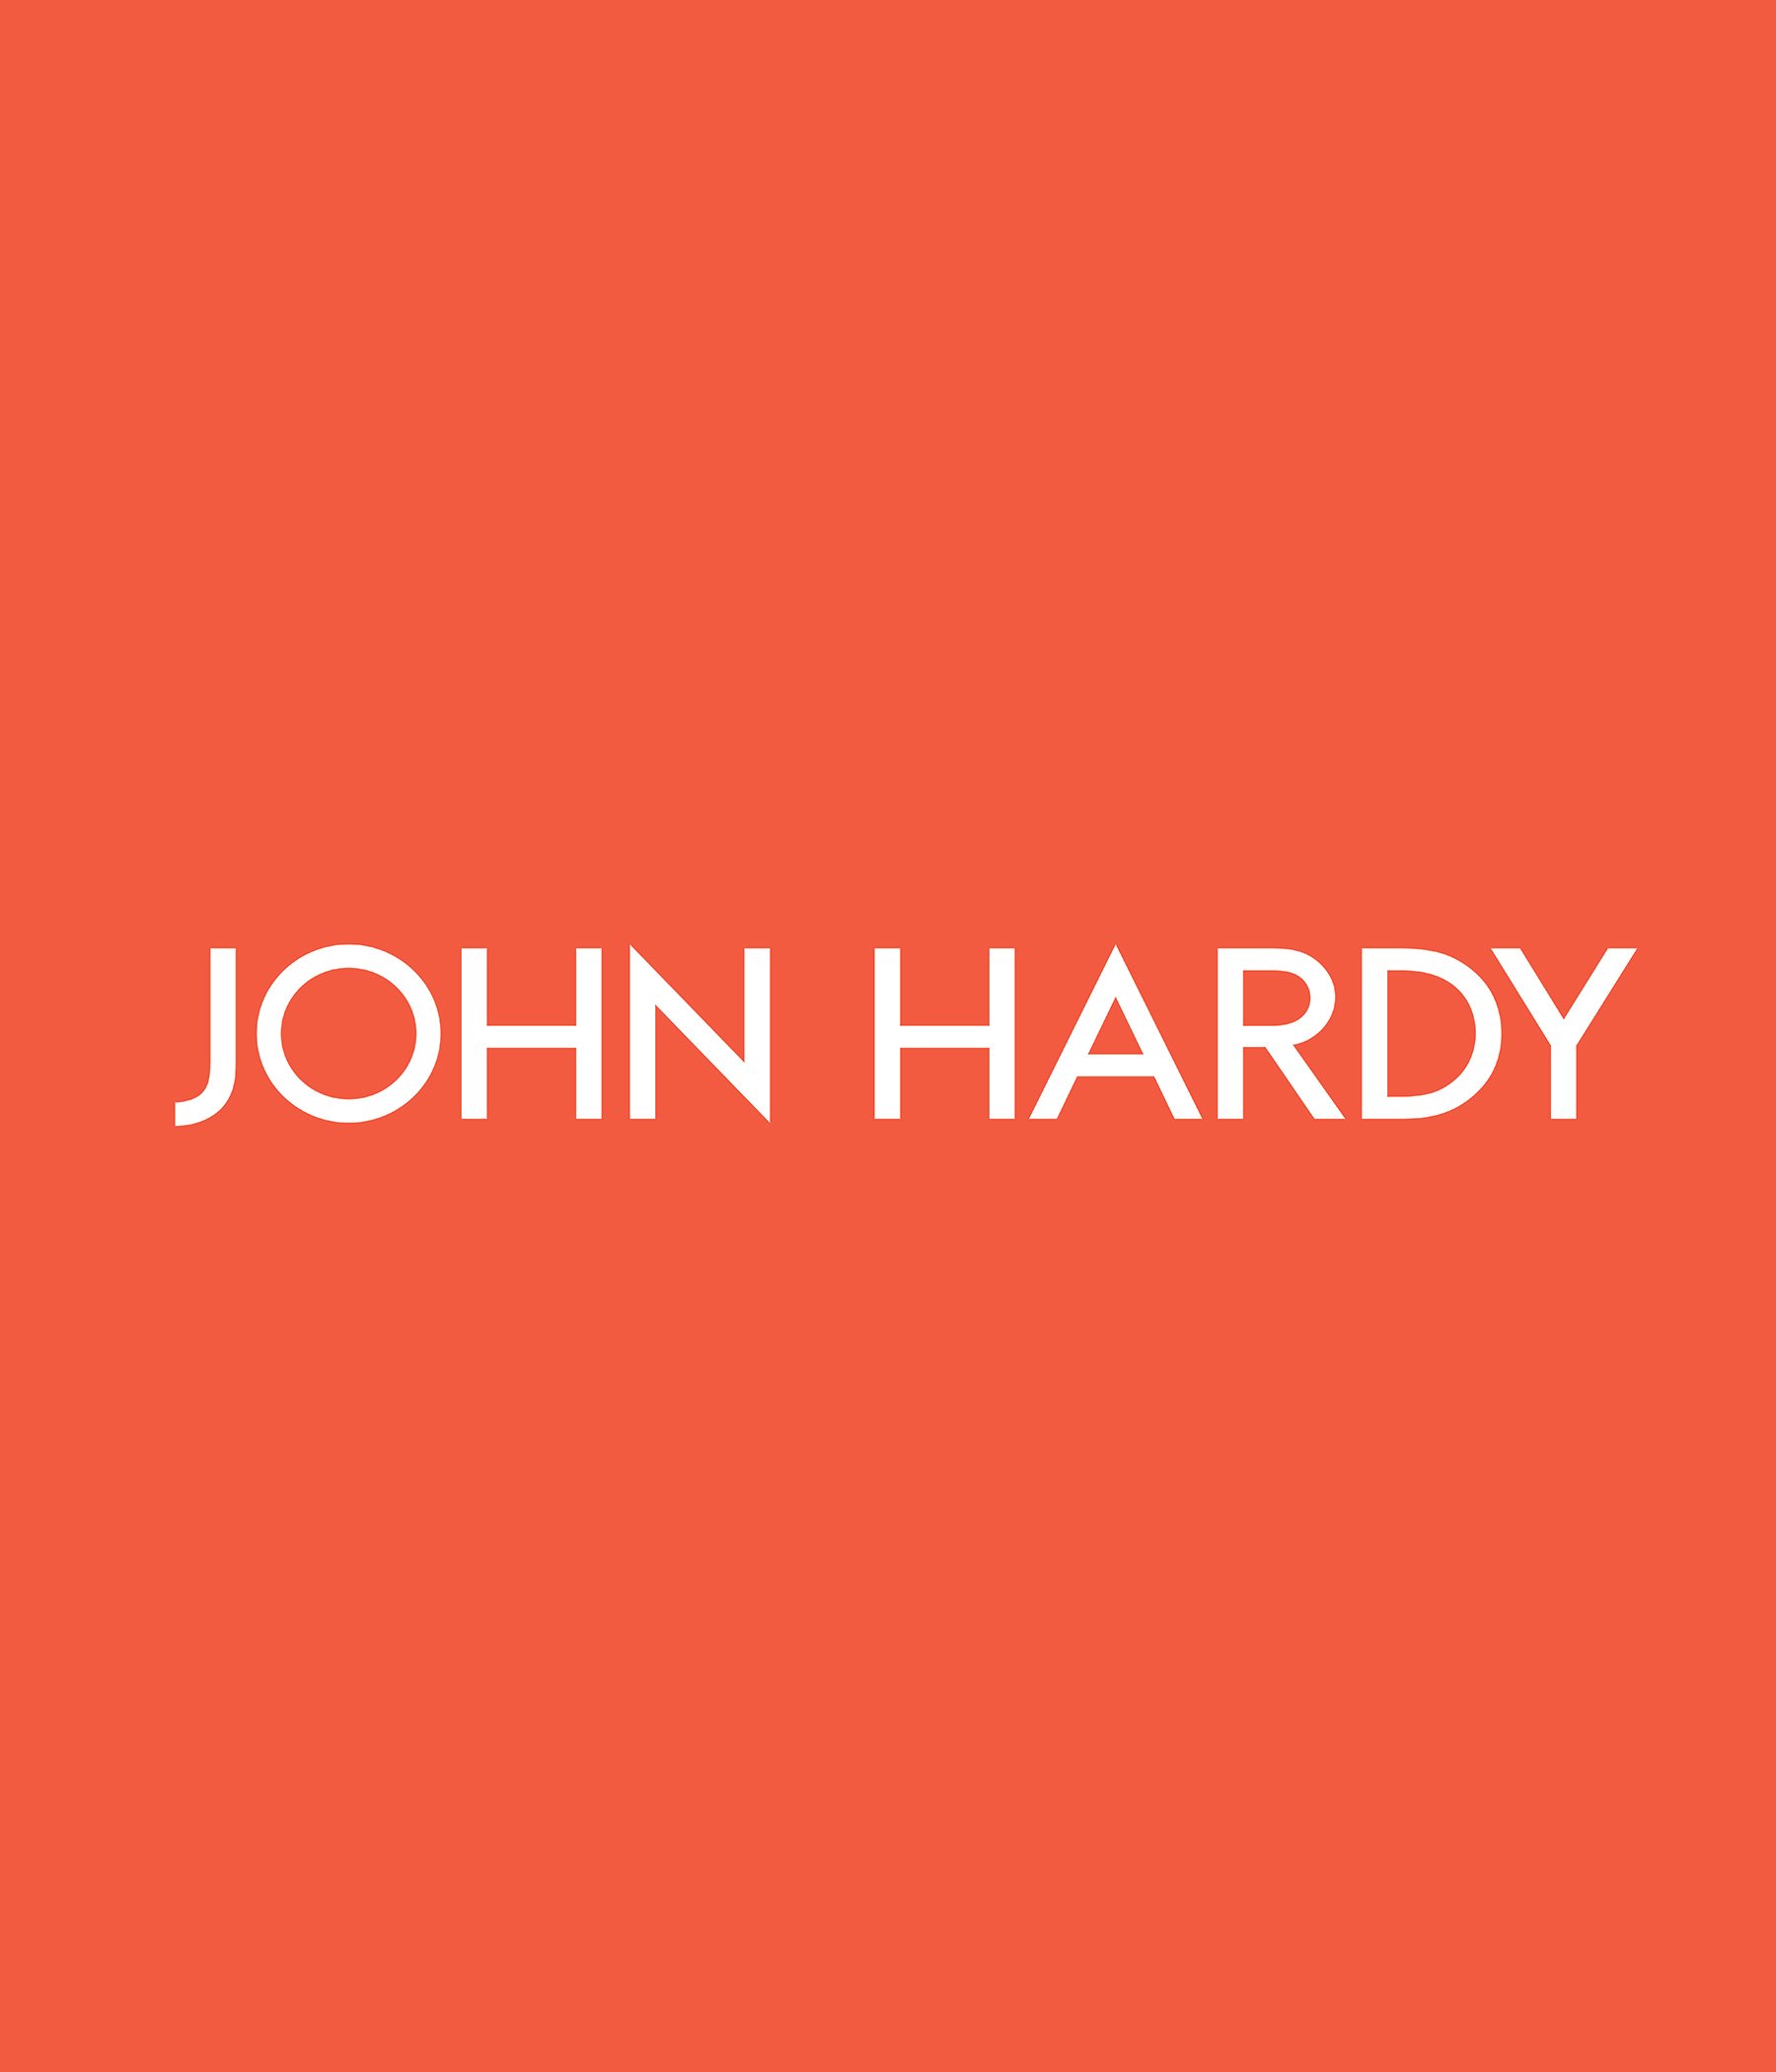 JOHN HARDY REVEAL SLIDE ONE.jpg